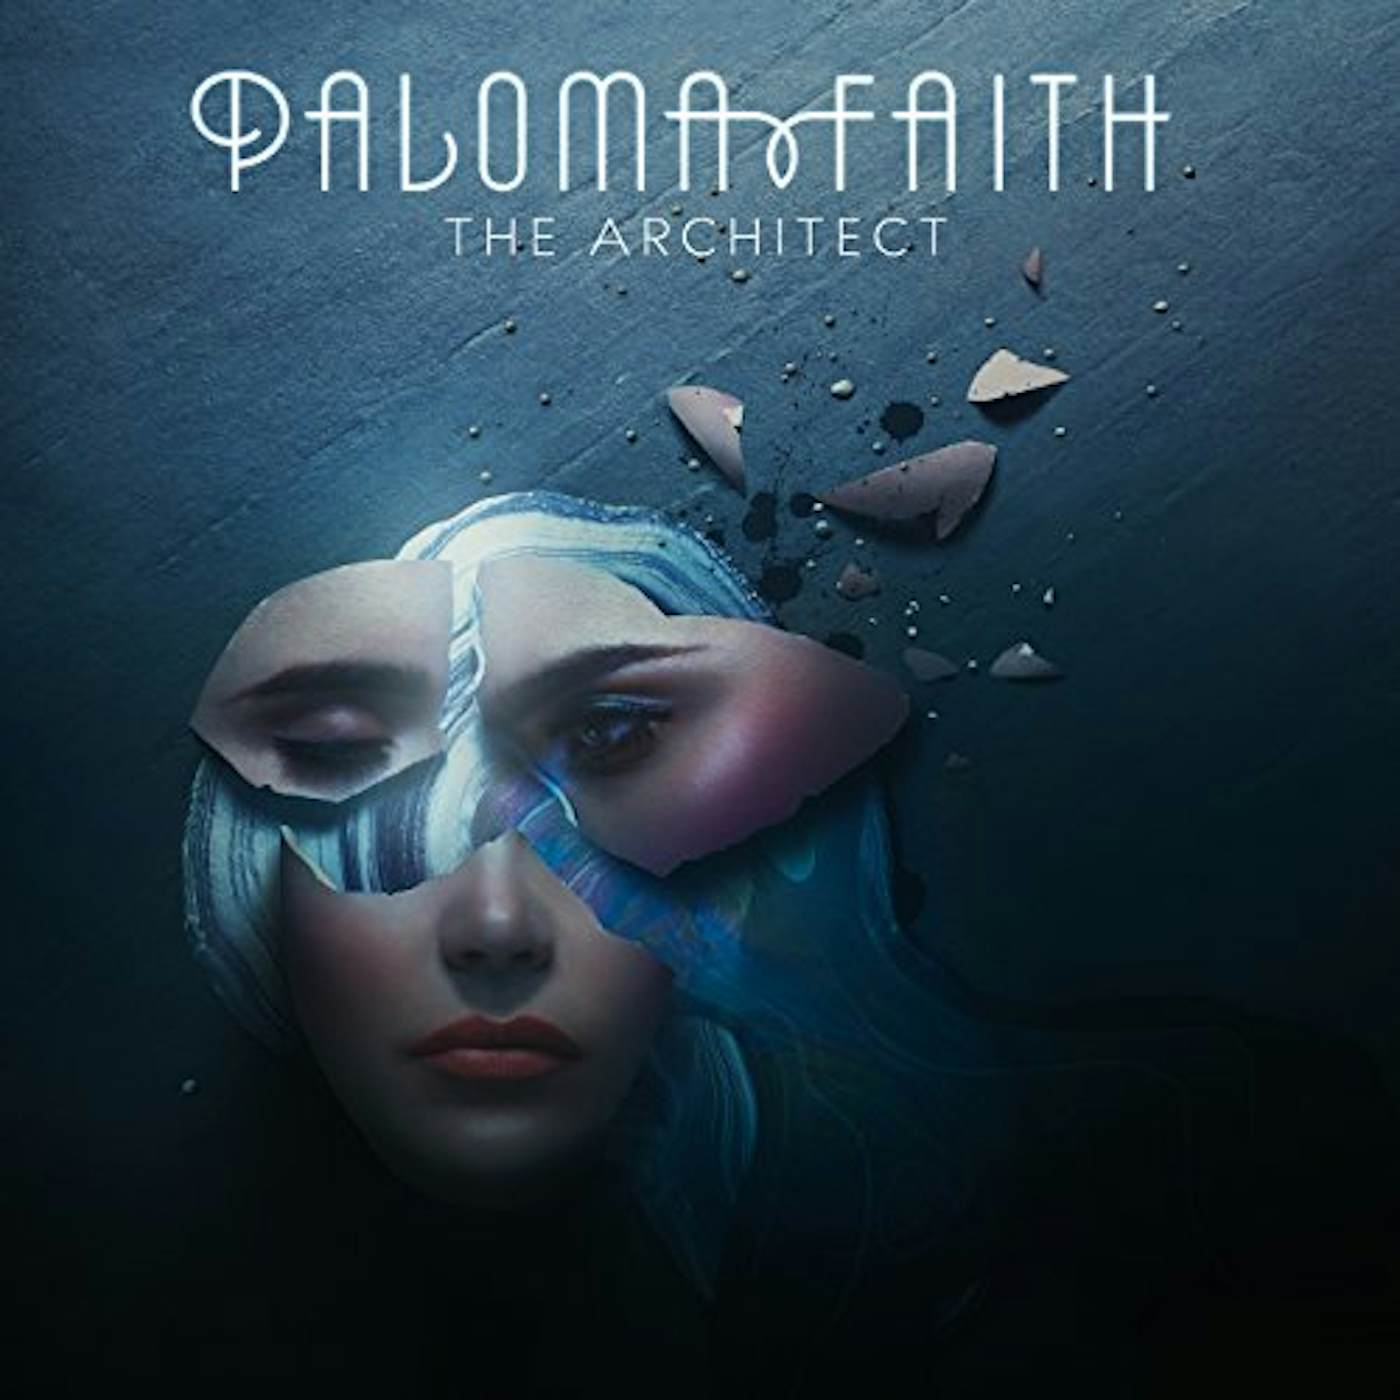 Paloma Faith ARCHITECT Vinyl Record